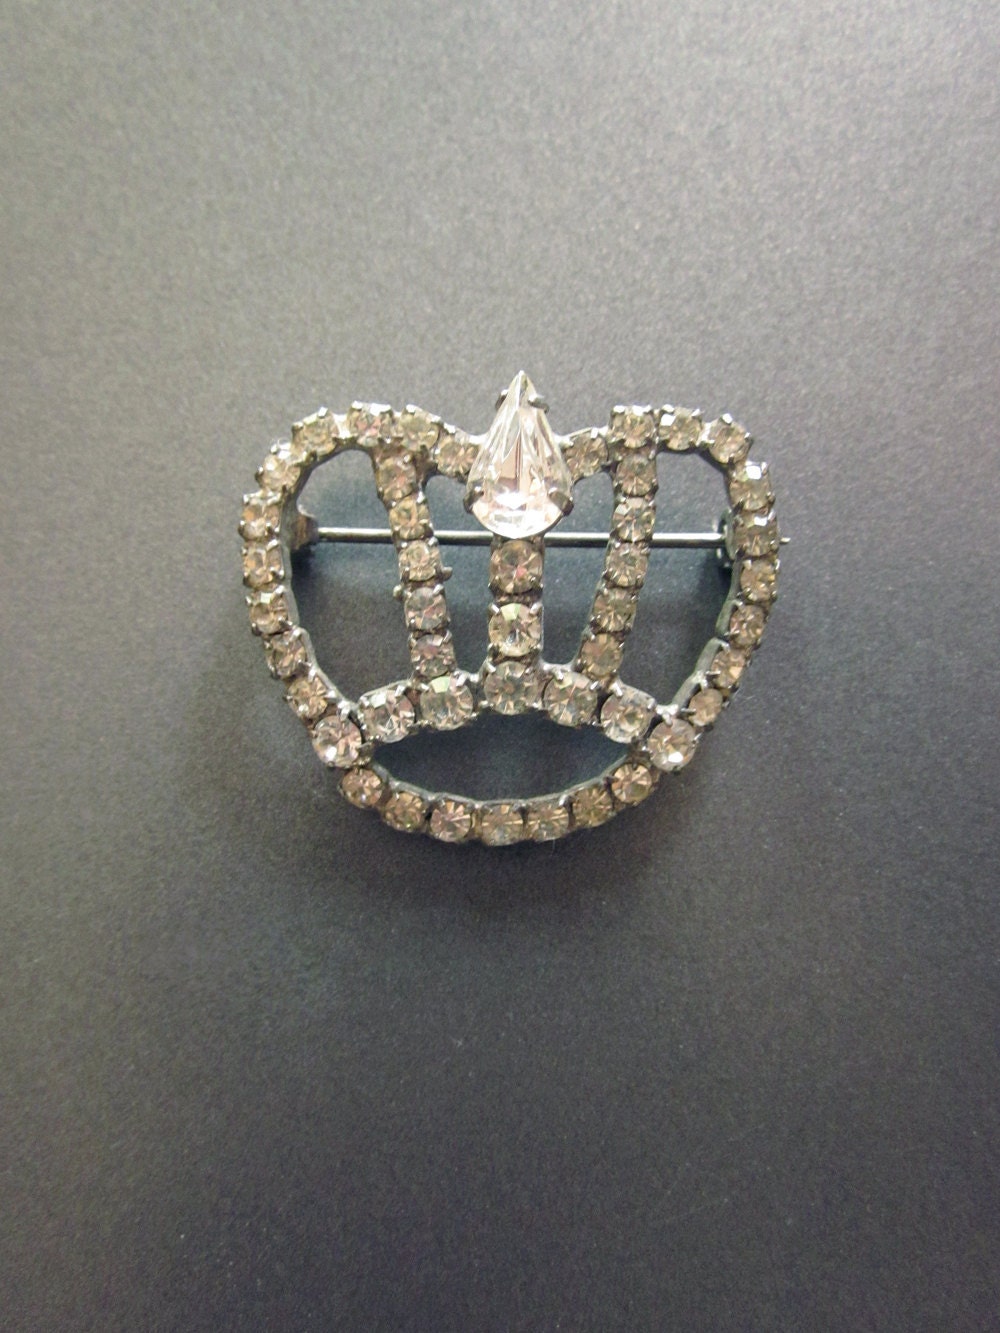 Vintage Rhinestone Crown Brooch - JeepersKeepers